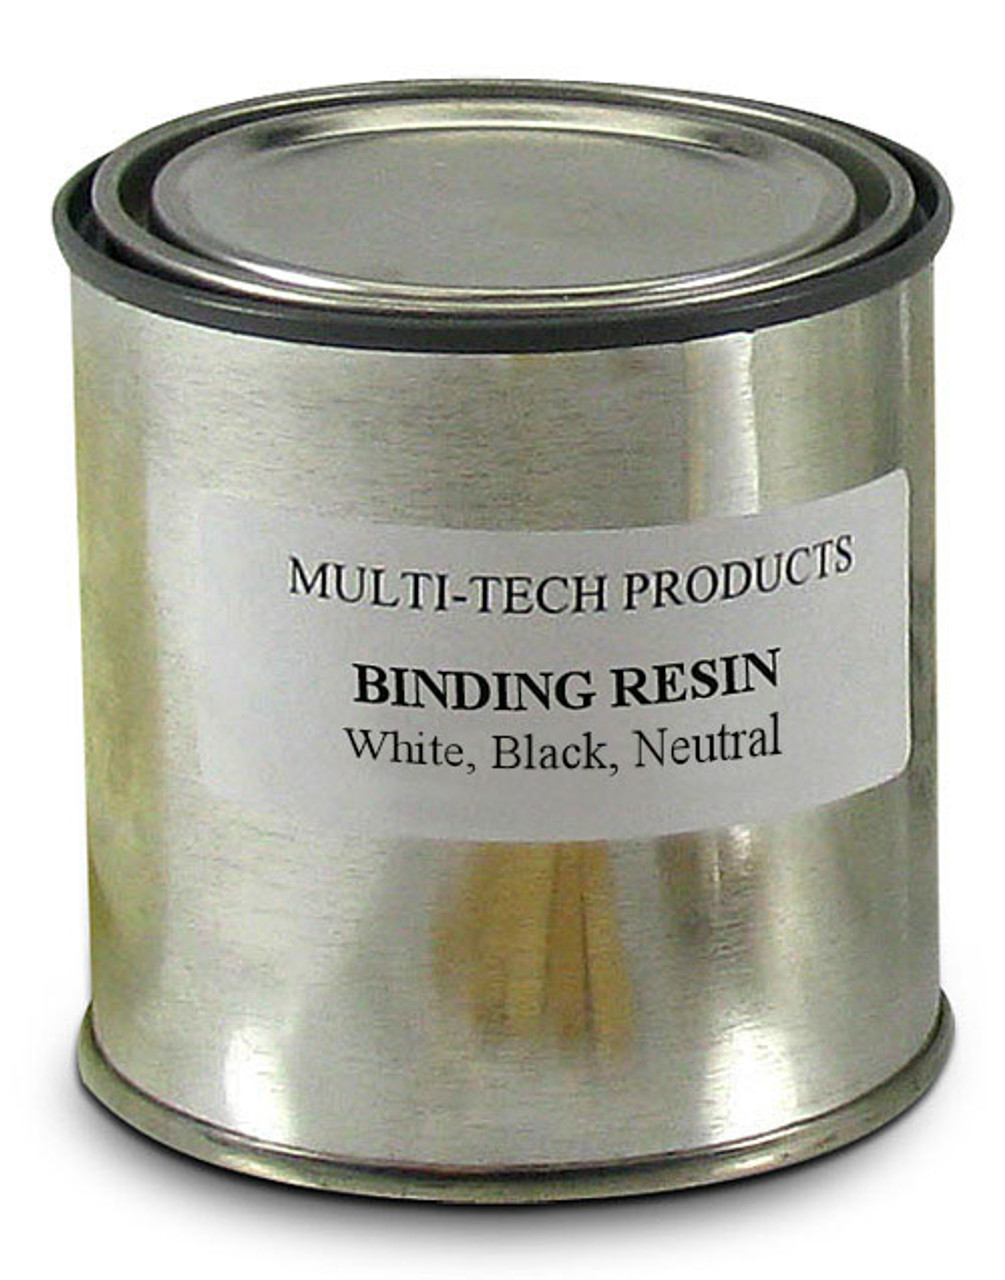 Binding Resin Structural Fiberglass Repair Kit Acrylic Plastic ABS & More